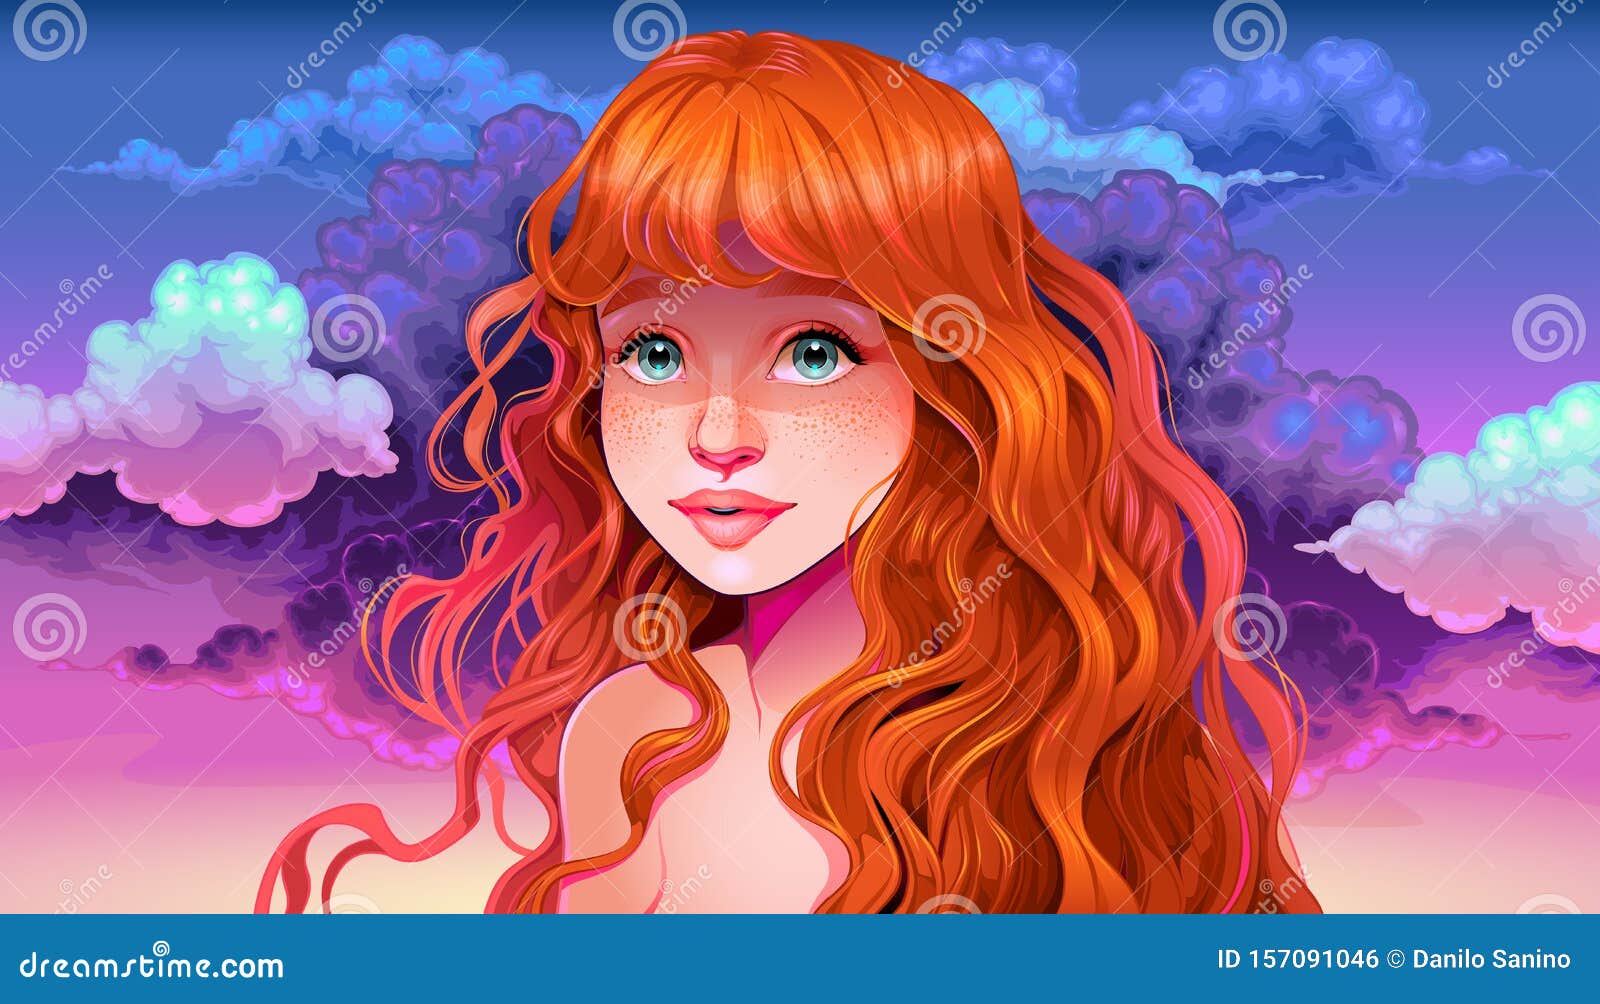 Blue-haired freckled girl illustration - wide 5